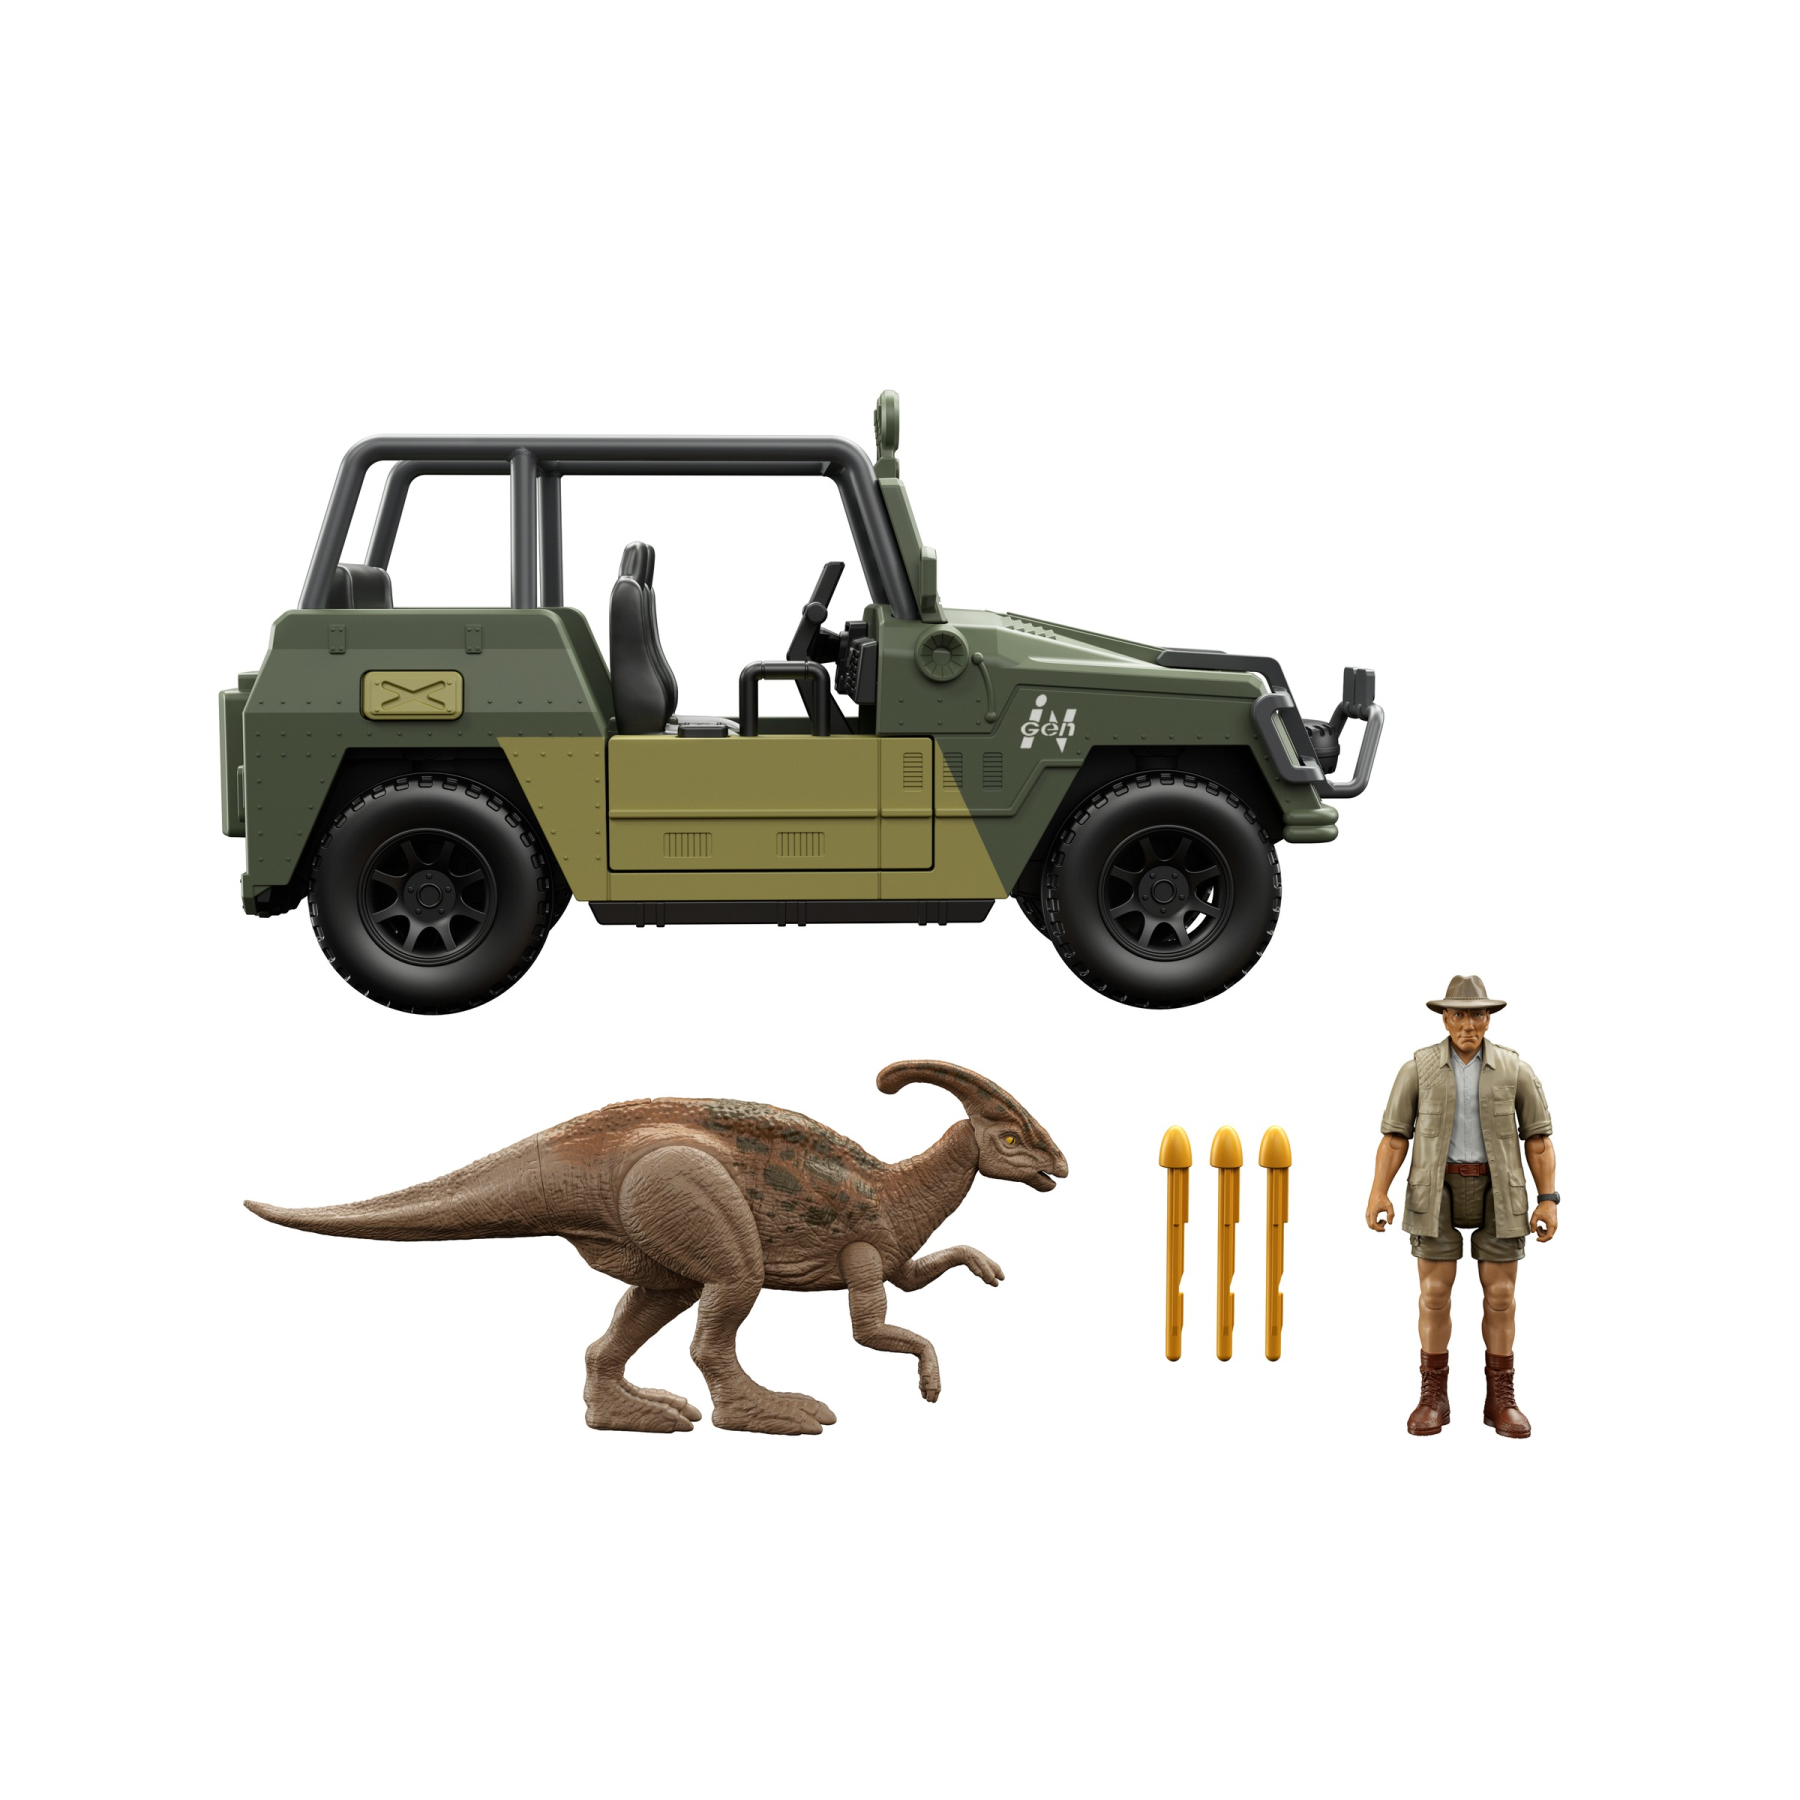 Jurassic world, playset con veicolo, action figure di tembo e parasaurolophus, giocattolo per bambini 4+ anni - Jurassic World